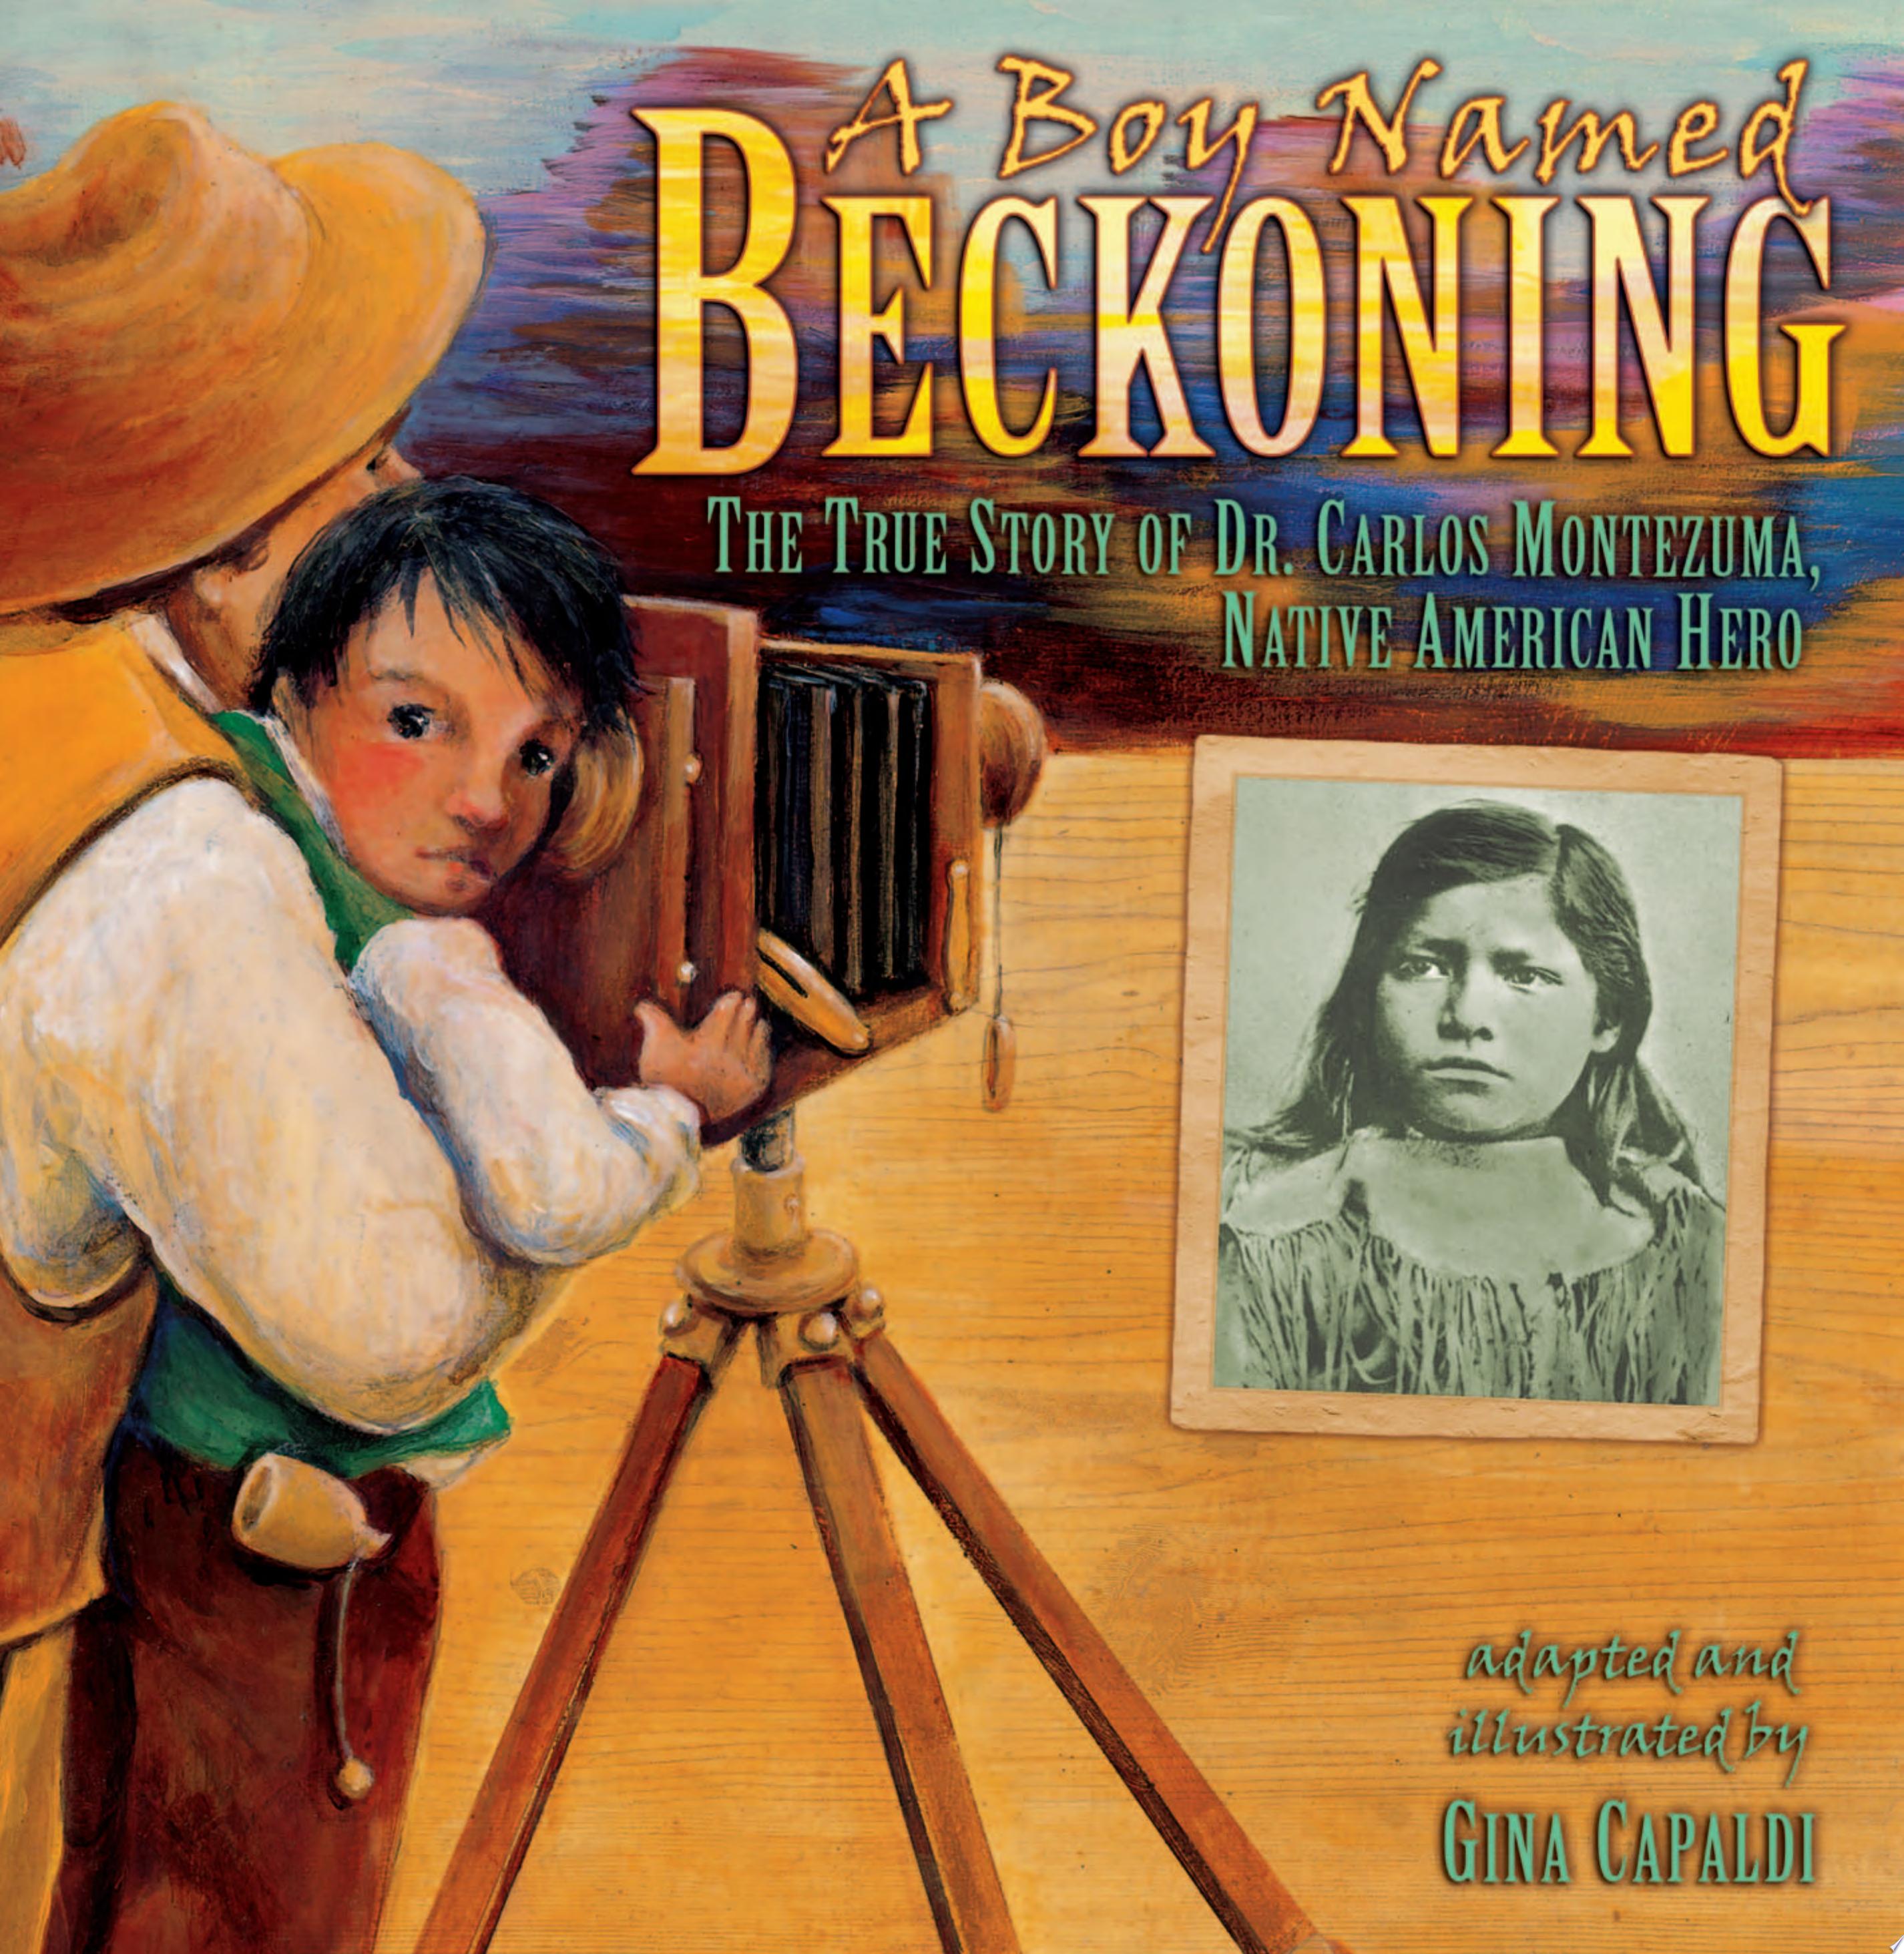 Image for "A Boy Named Beckoning"